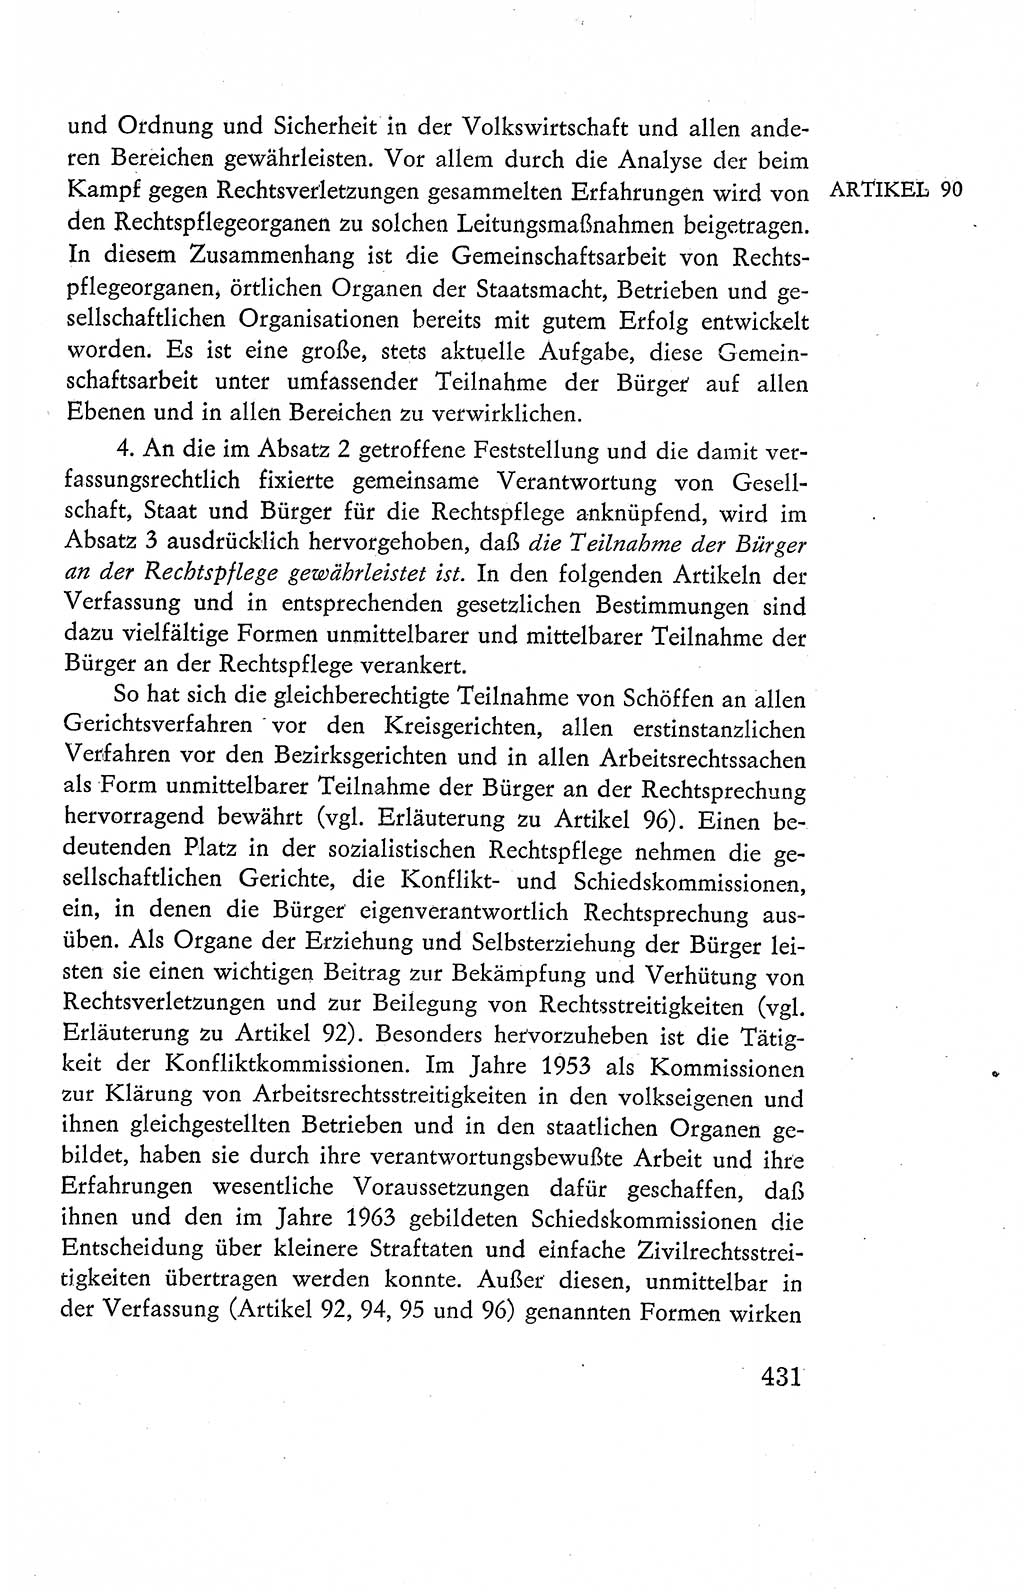 Verfassung der Deutschen Demokratischen Republik (DDR), Dokumente, Kommentar 1969, Band 2, Seite 431 (Verf. DDR Dok. Komm. 1969, Bd. 2, S. 431)